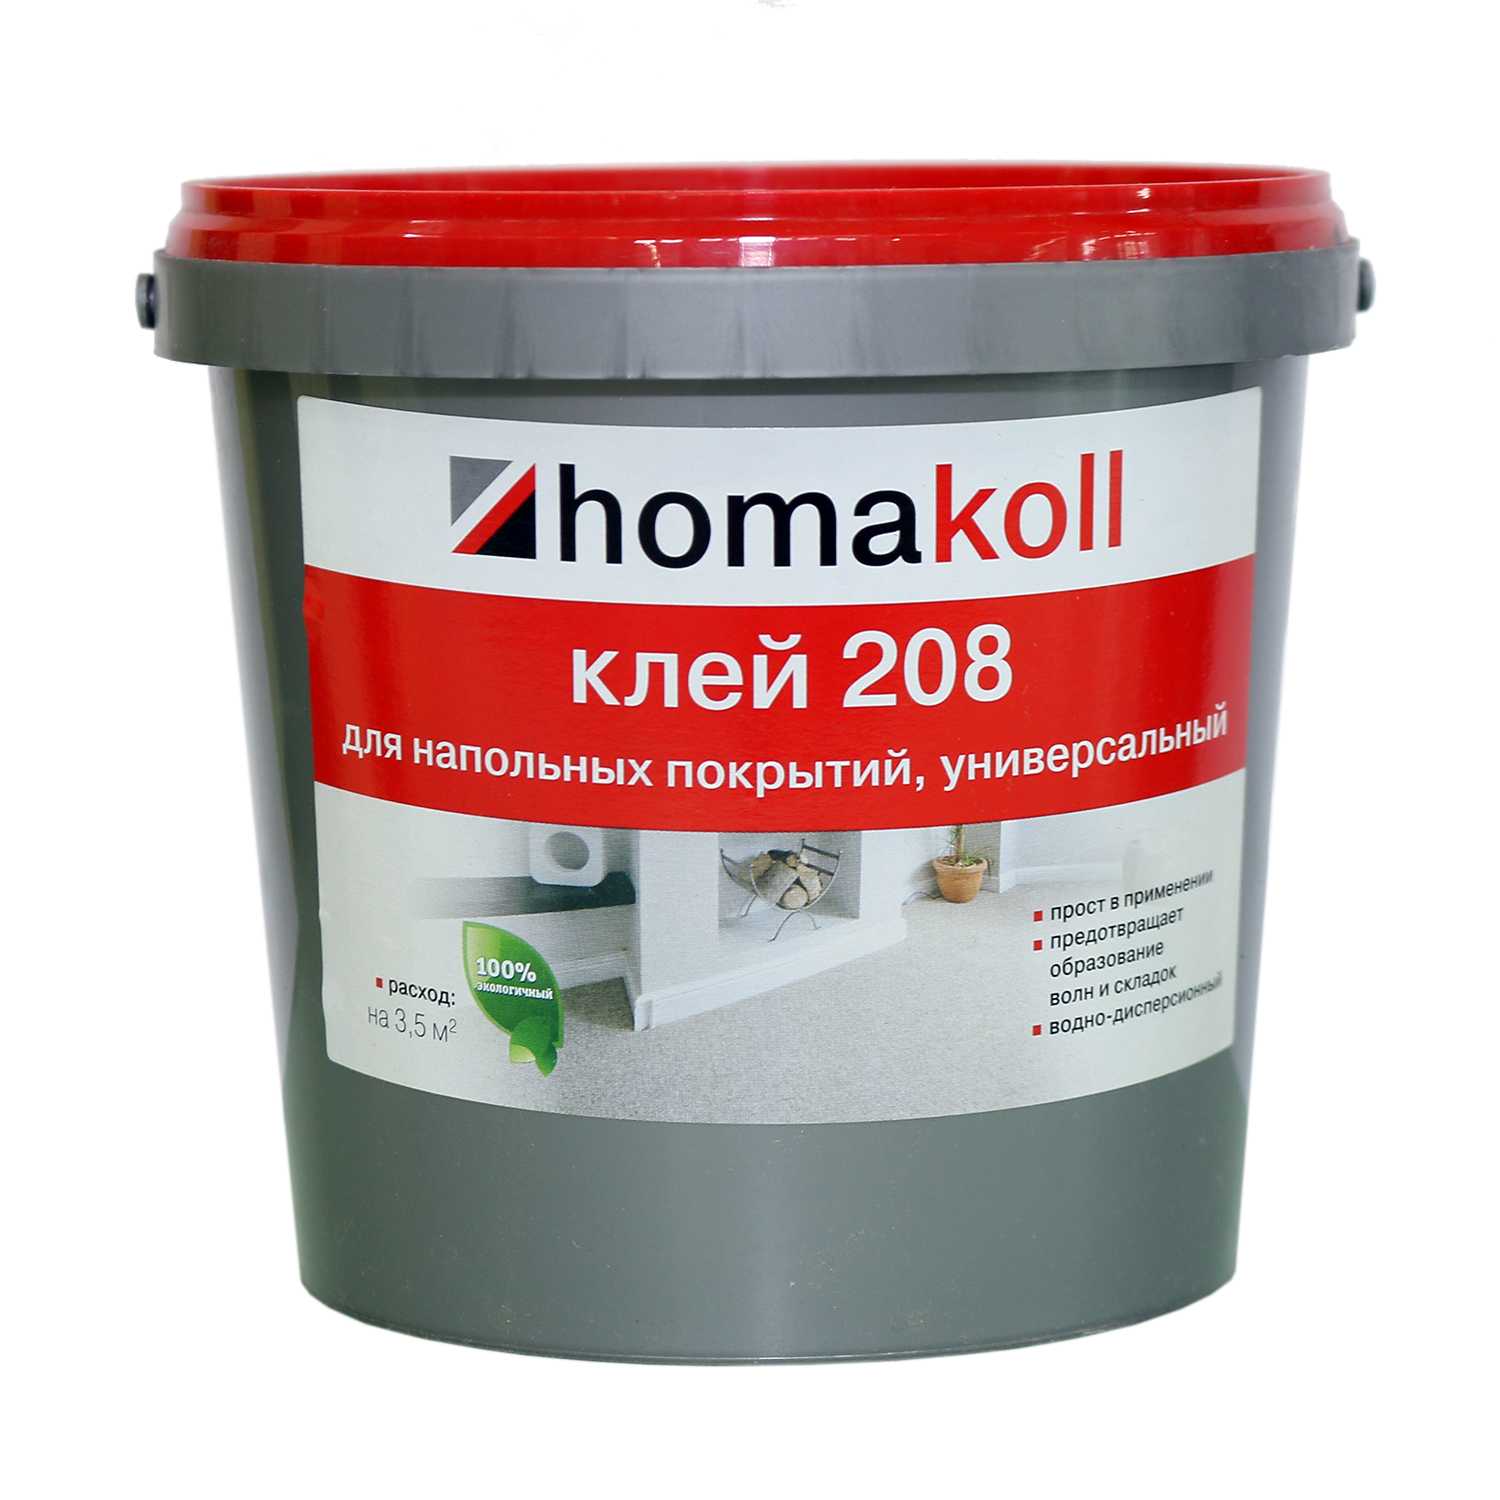 Клей homakoll 208 (1,3 кг)